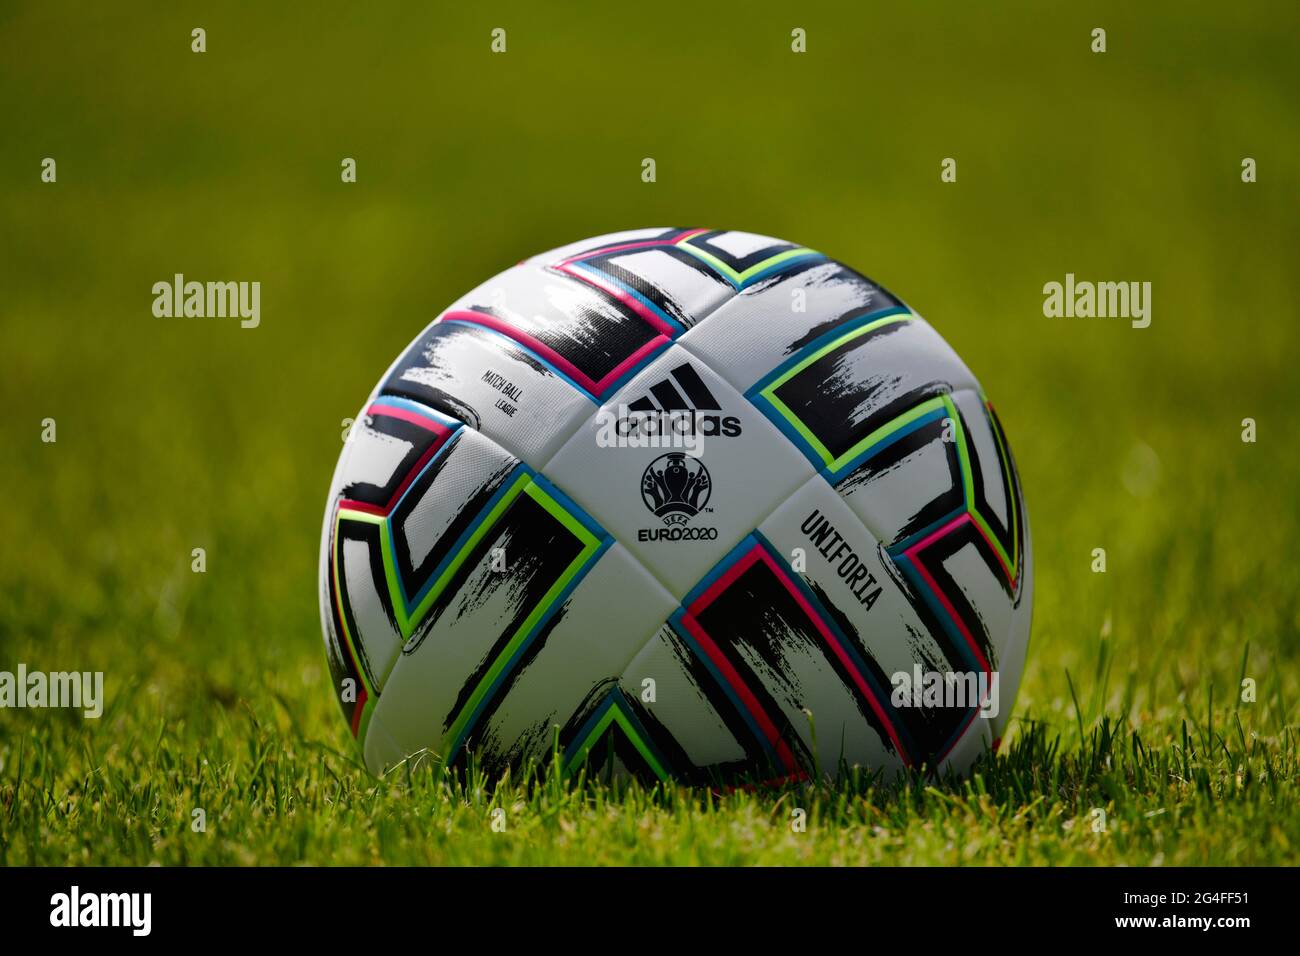 Pallone ufficiale della UEFA EURO 2020 2021, adidas UNIFORIA, Germania Foto  stock - Alamy